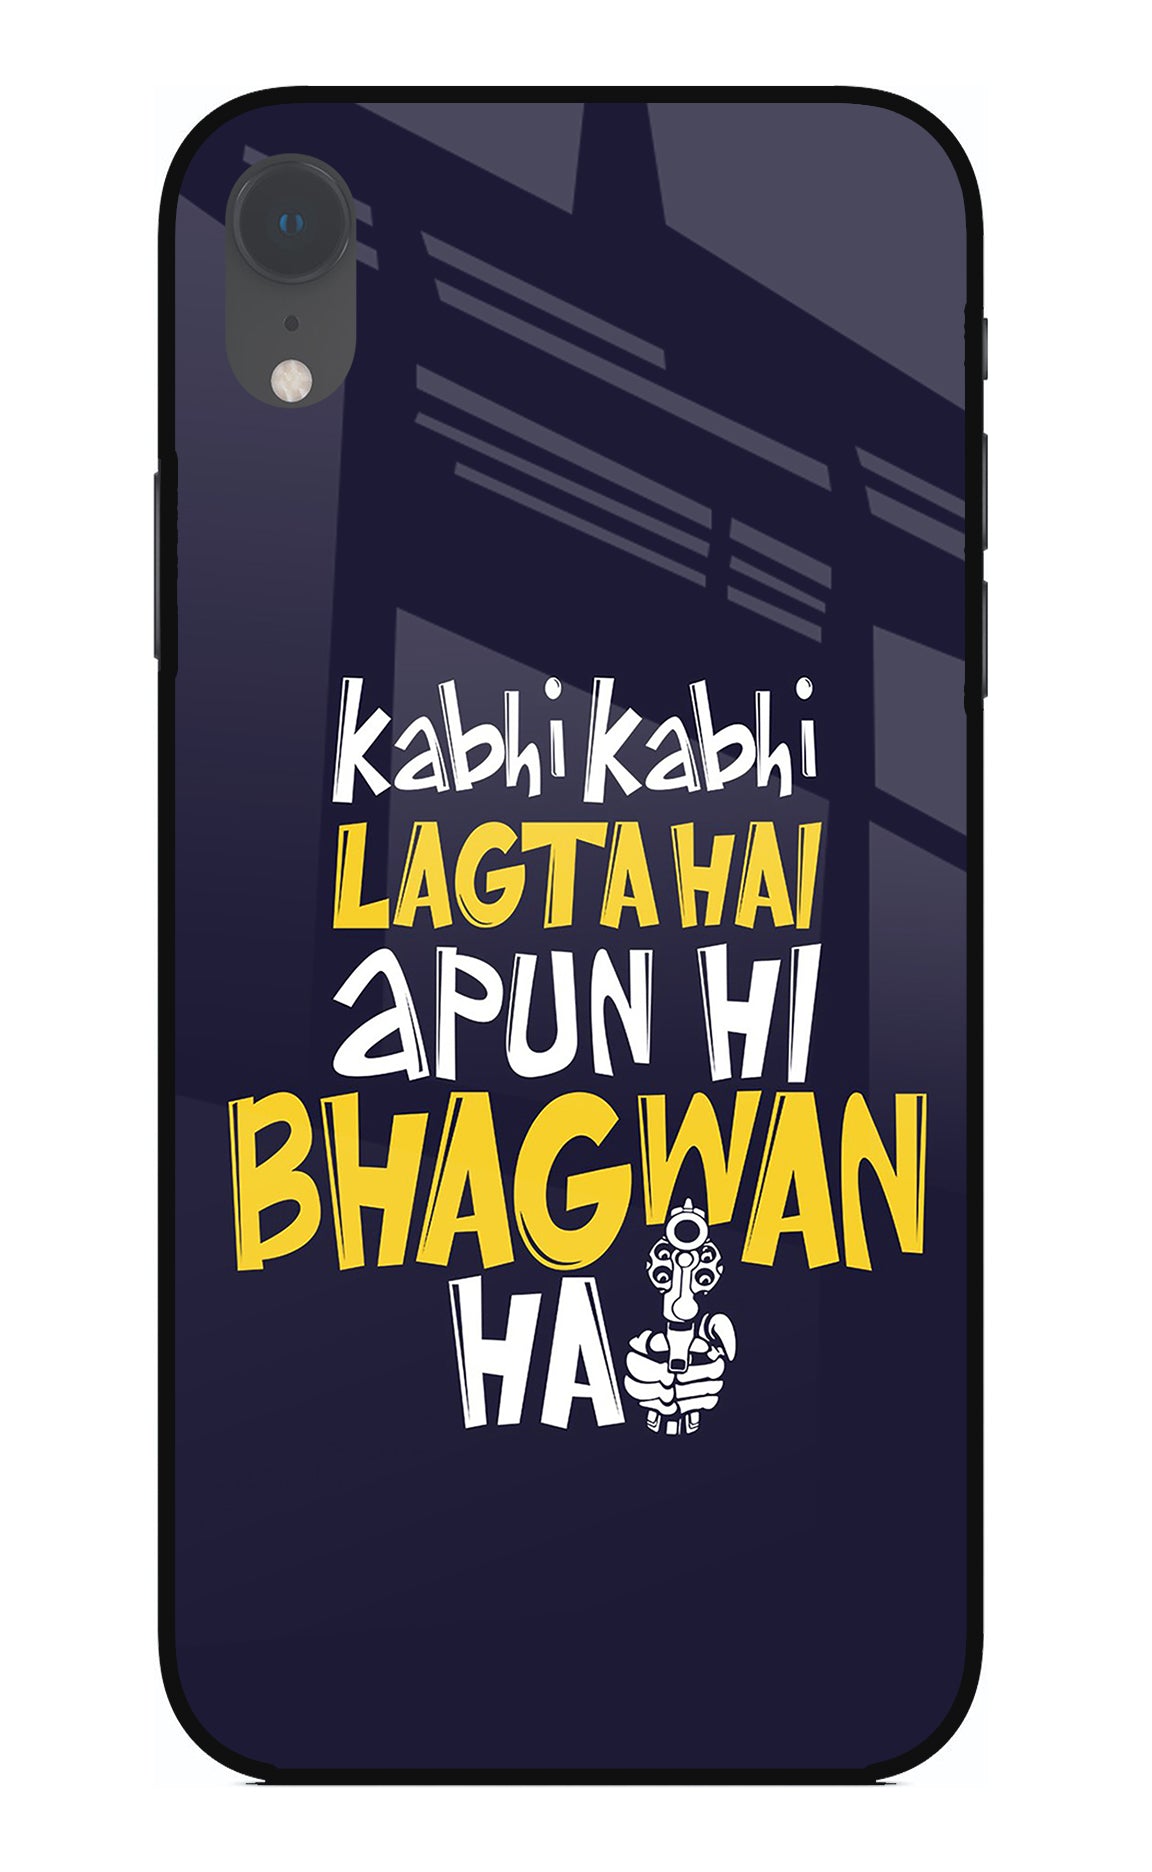 Kabhi Kabhi Lagta Hai Apun Hi Bhagwan Hai iPhone XR Back Cover